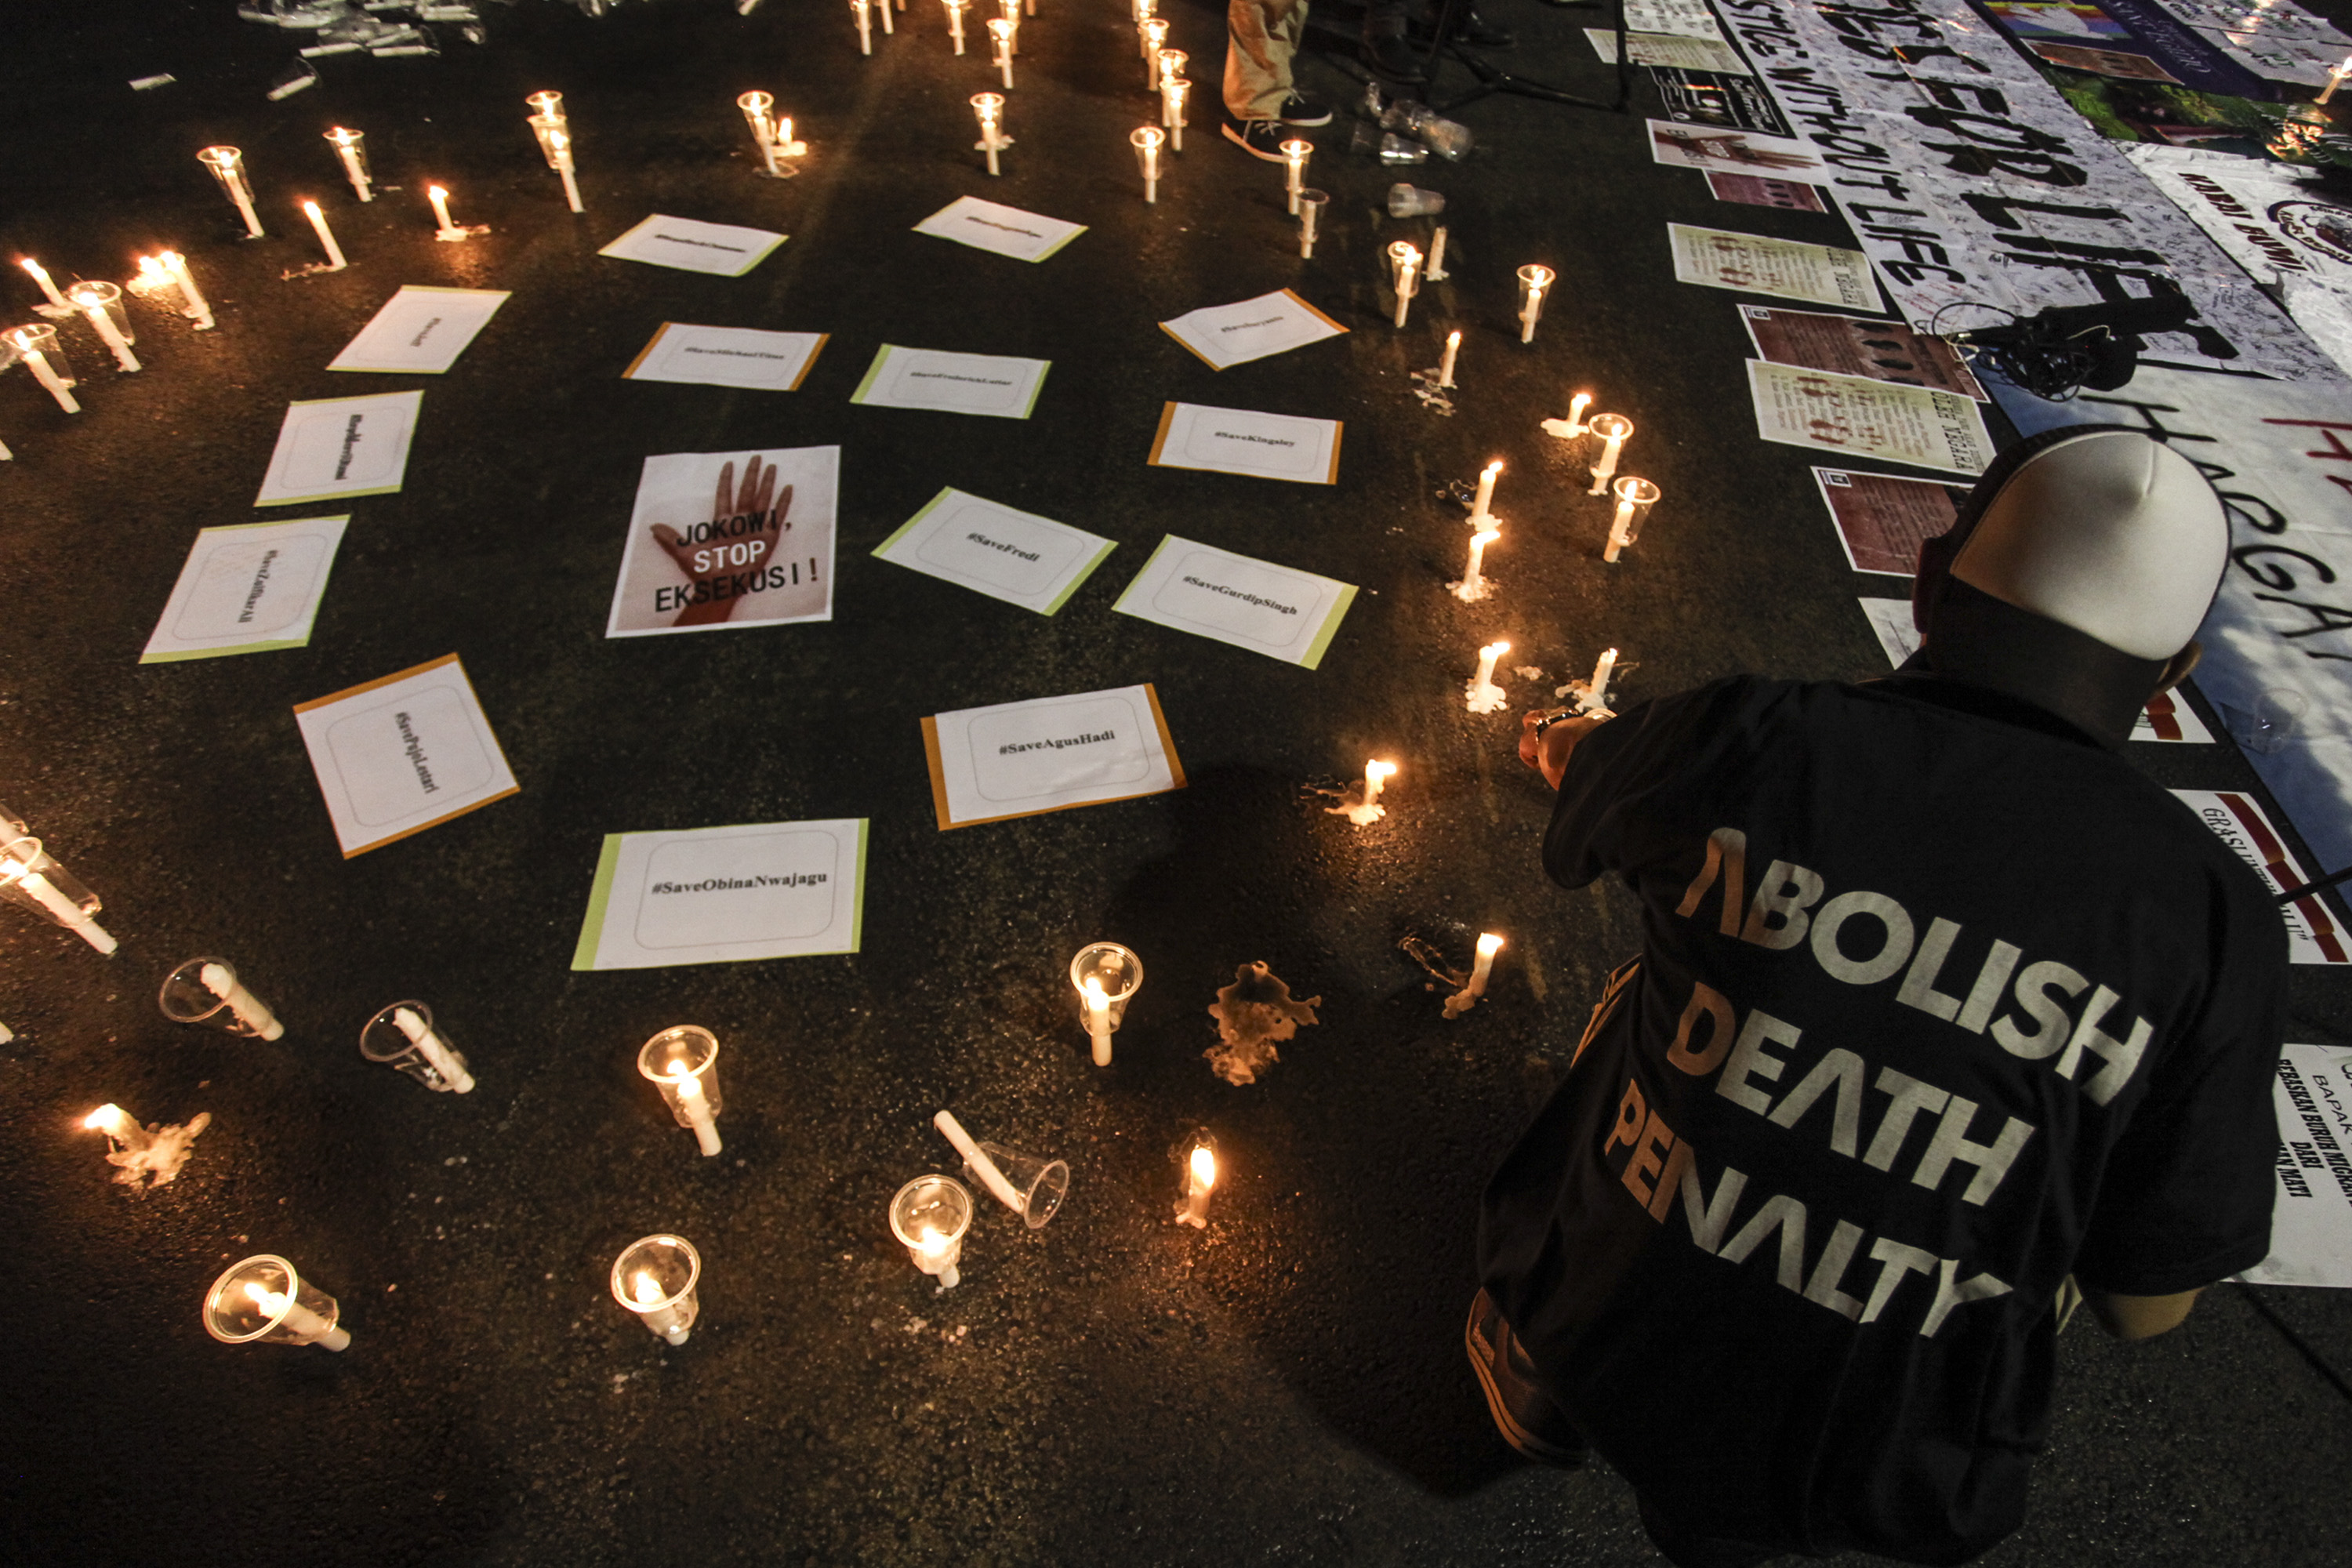 TOLAK HUKUMAN MATI. Aktivis yang tergabung dalam Lembaga Bantuan Hukum Masyarakat menyalakan lilin pada aksi Menolak Hukuman Mati jilid 3 di depan Istana Merdeka, Jakarta, Kamis, 28 Juli. Foto oleh Muhammad Adimaja/ANTARA  